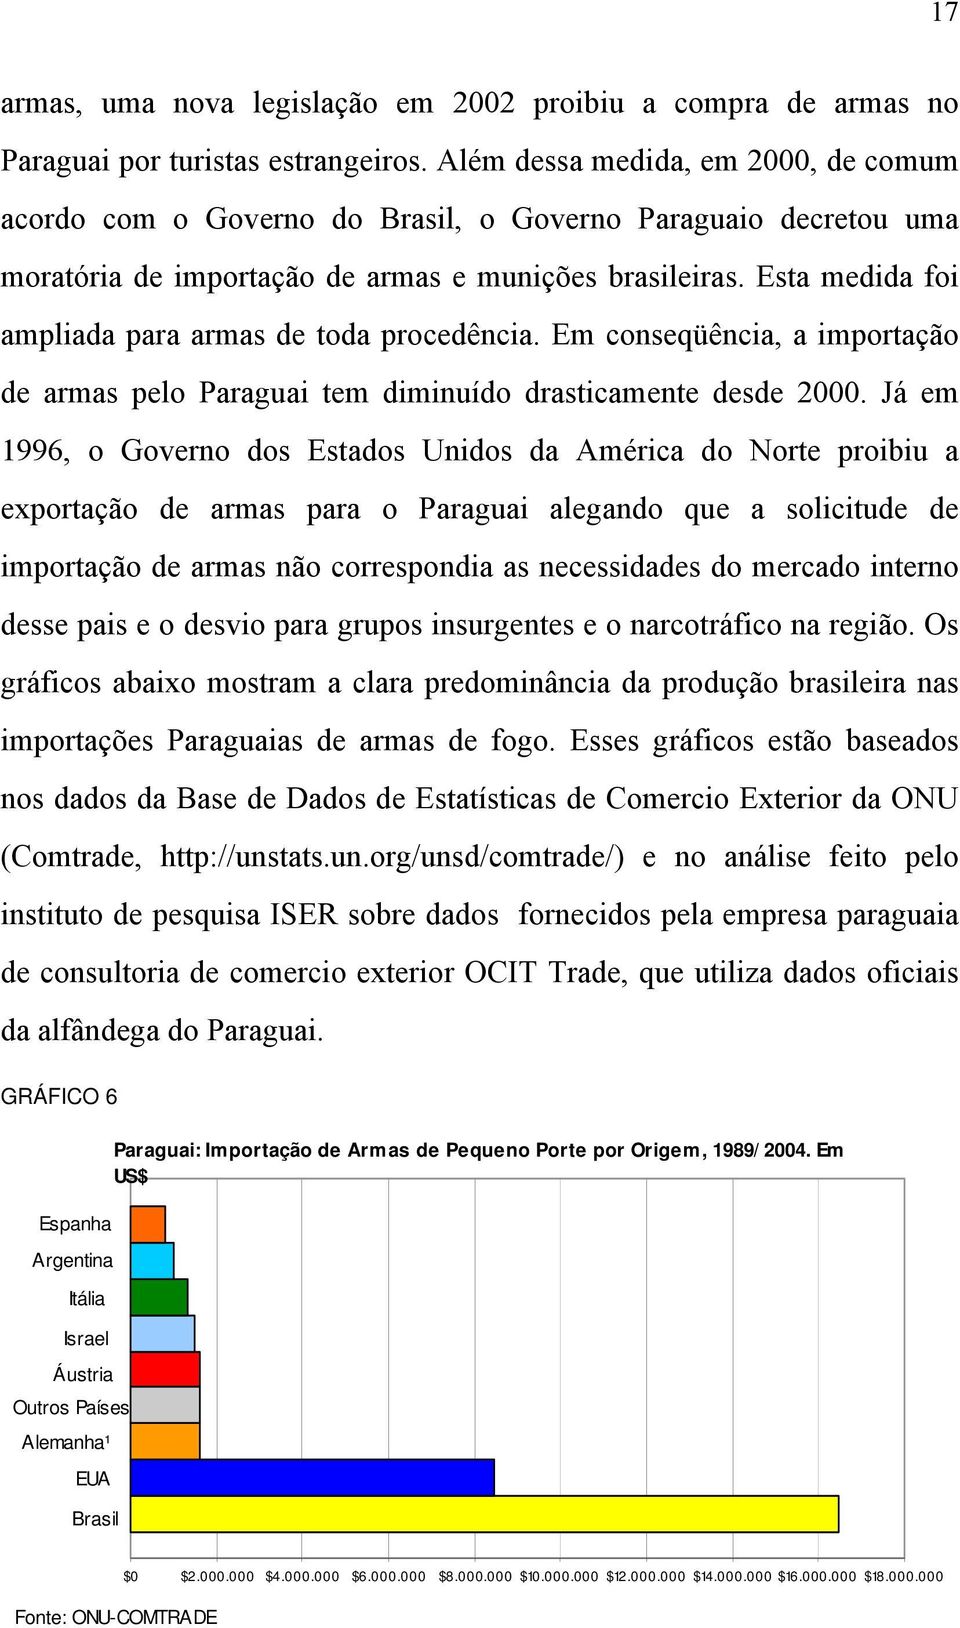 Esta medida foi ampliada para armas de toda procedência. Em conseqüência, a importação de armas pelo Paraguai tem diminuído drasticamente desde 2000.